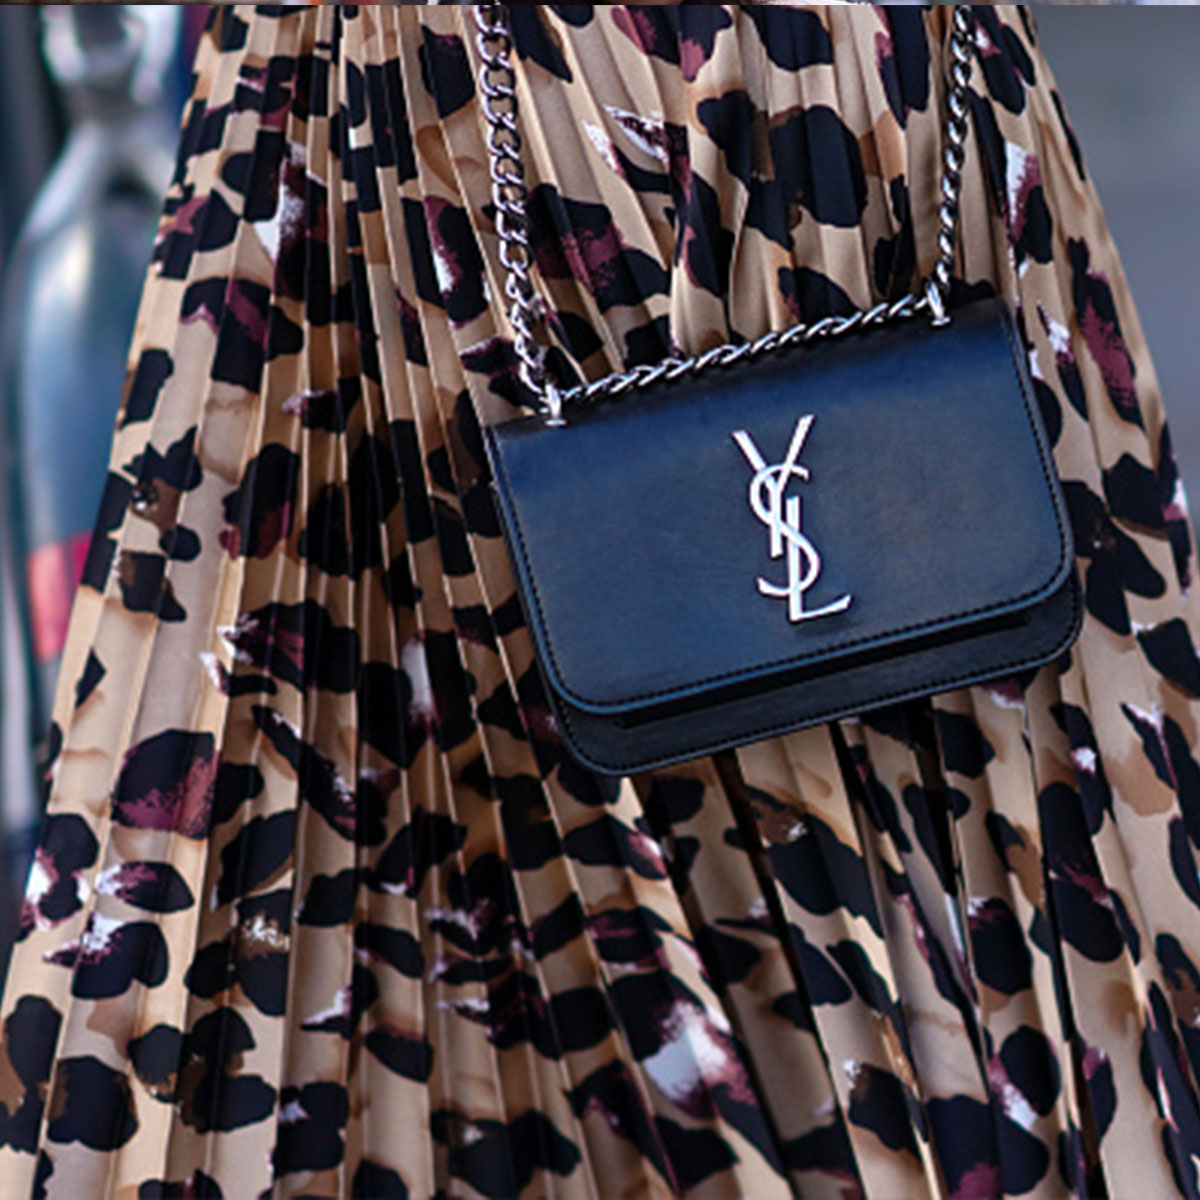 Yves Saint Laurent Bags & Purses for Sale at Auction